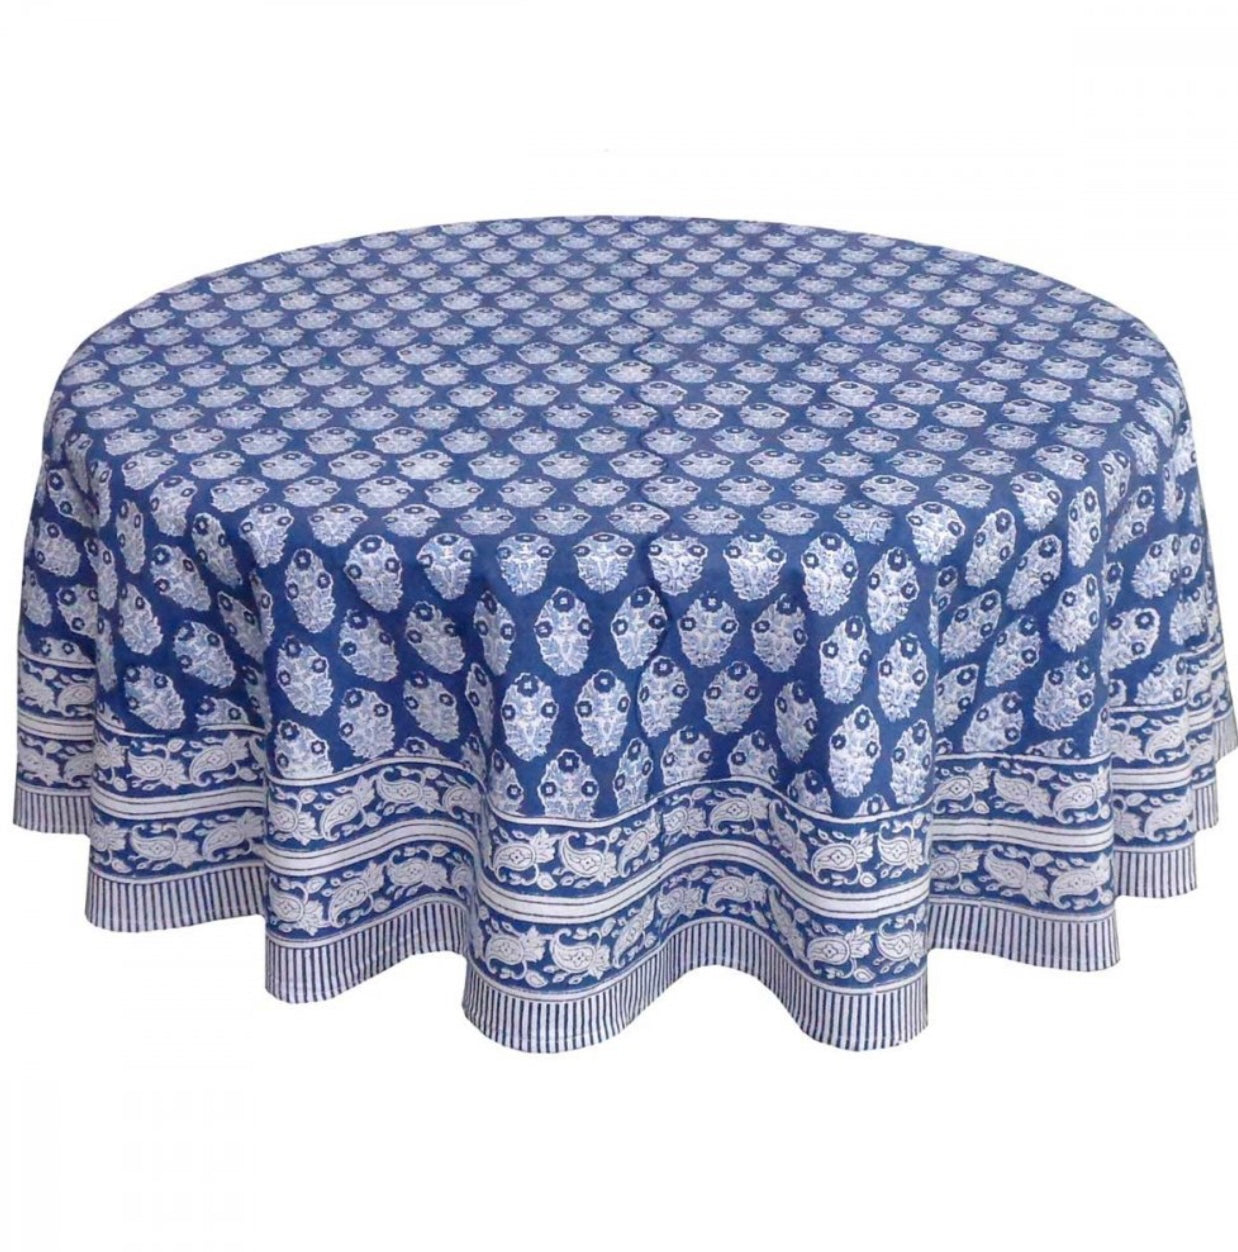 Petrel Blue Brindisi Tablecloth